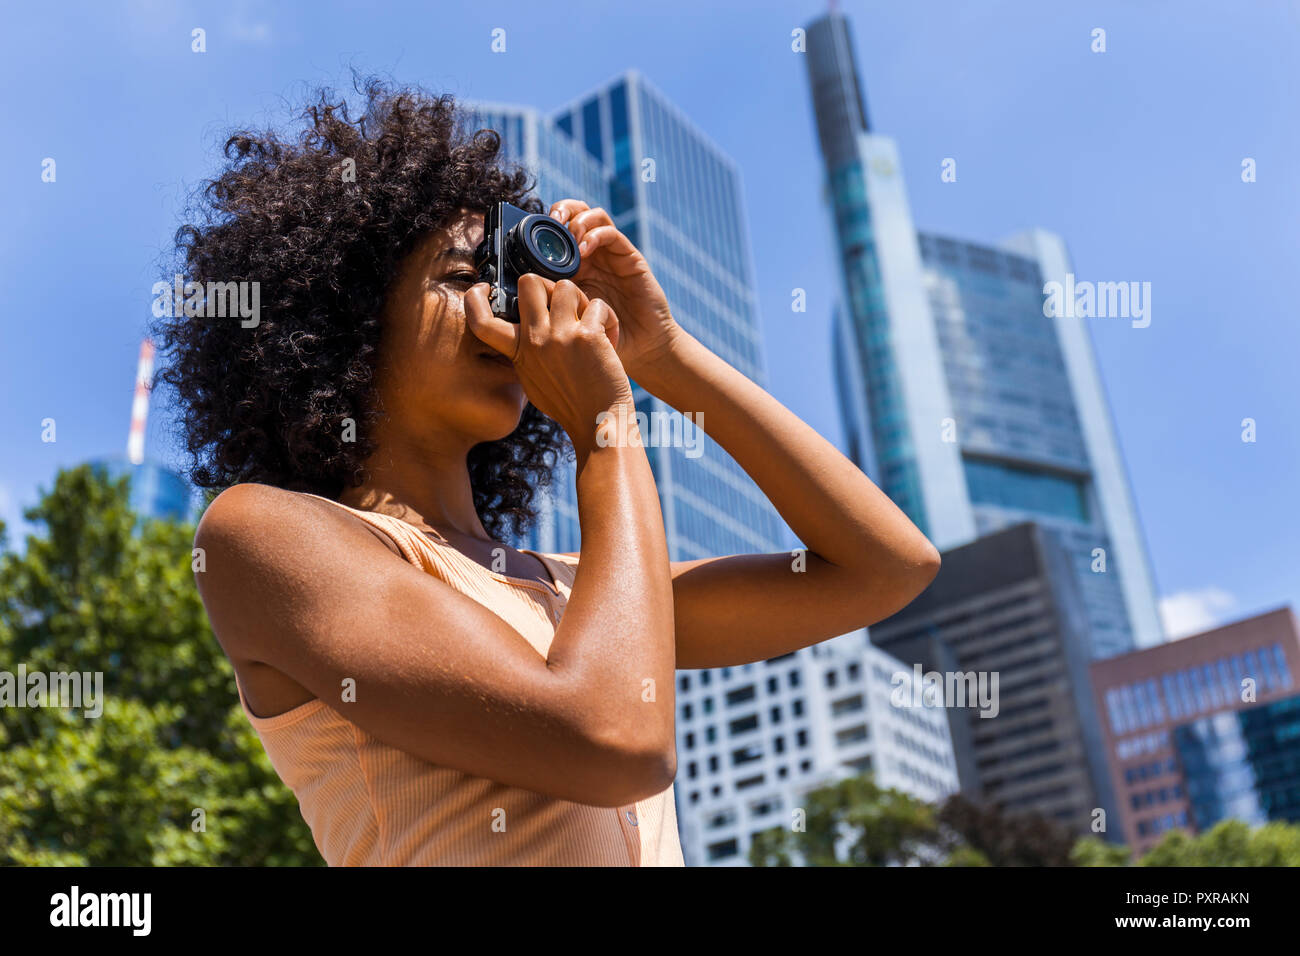 Deutschland, Frankfurt, junge Frau mit dem lockigen Haar Fotos nehmen in der Stadt Stockfoto